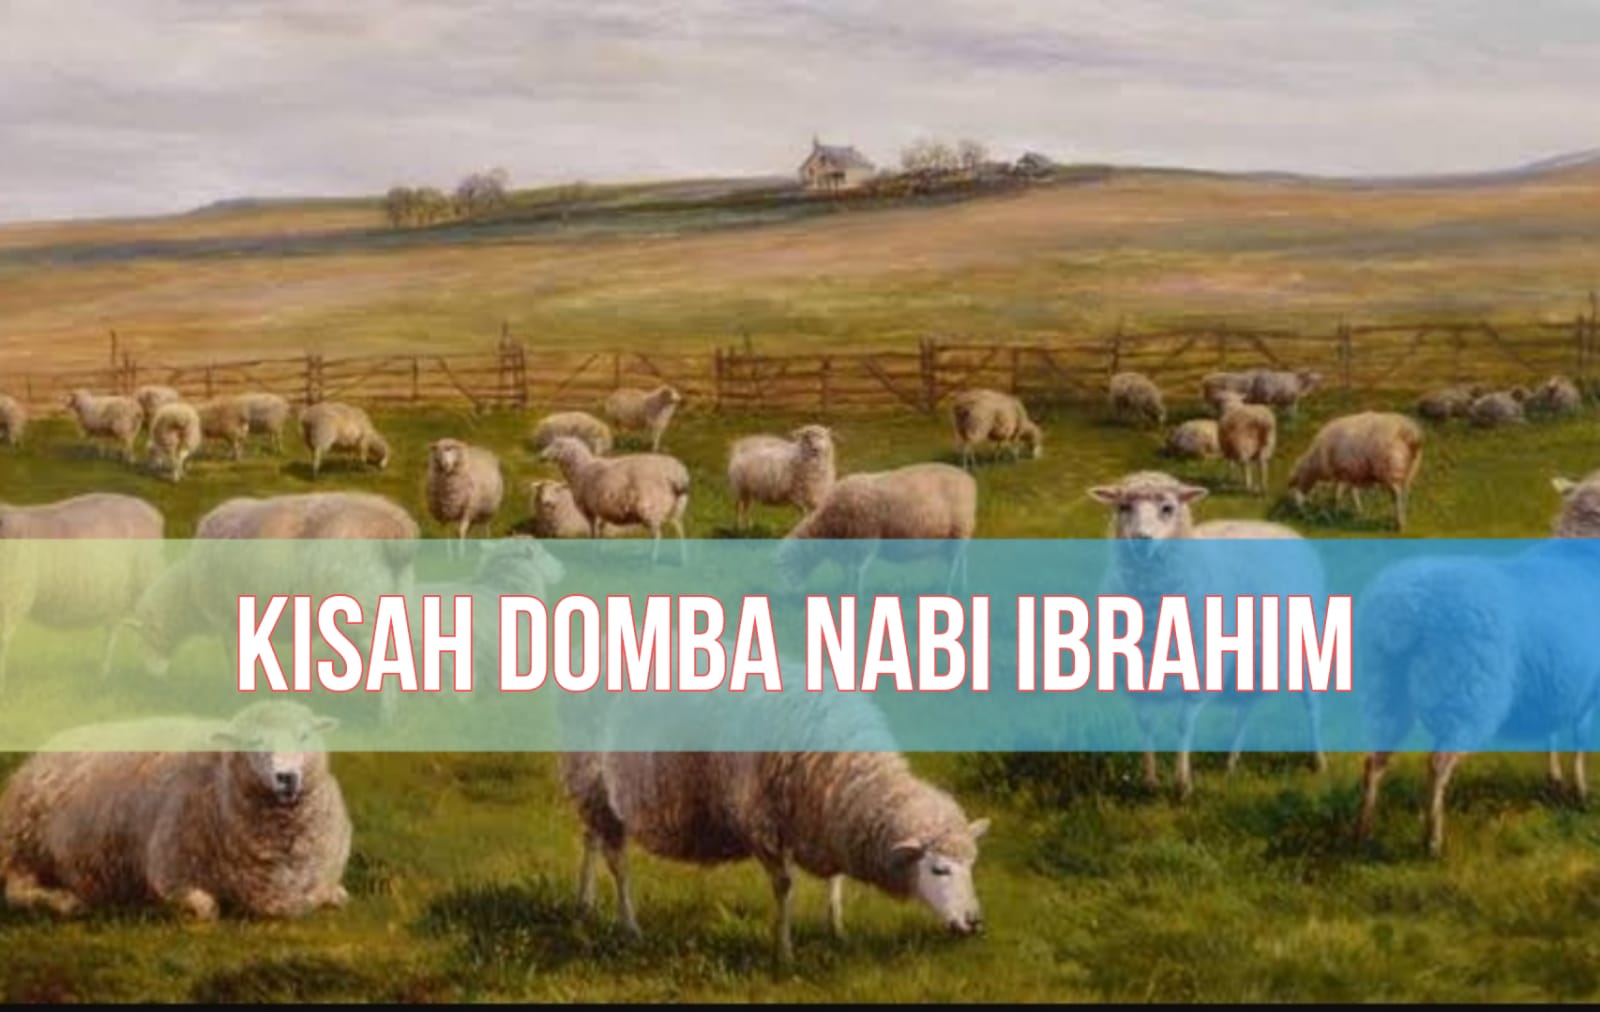 Kisah Domba Nabi Ibrahim, Hewan Penghuni Surga, Sekaligus Awal Mula Perintah Kurban Saat Idul Adha